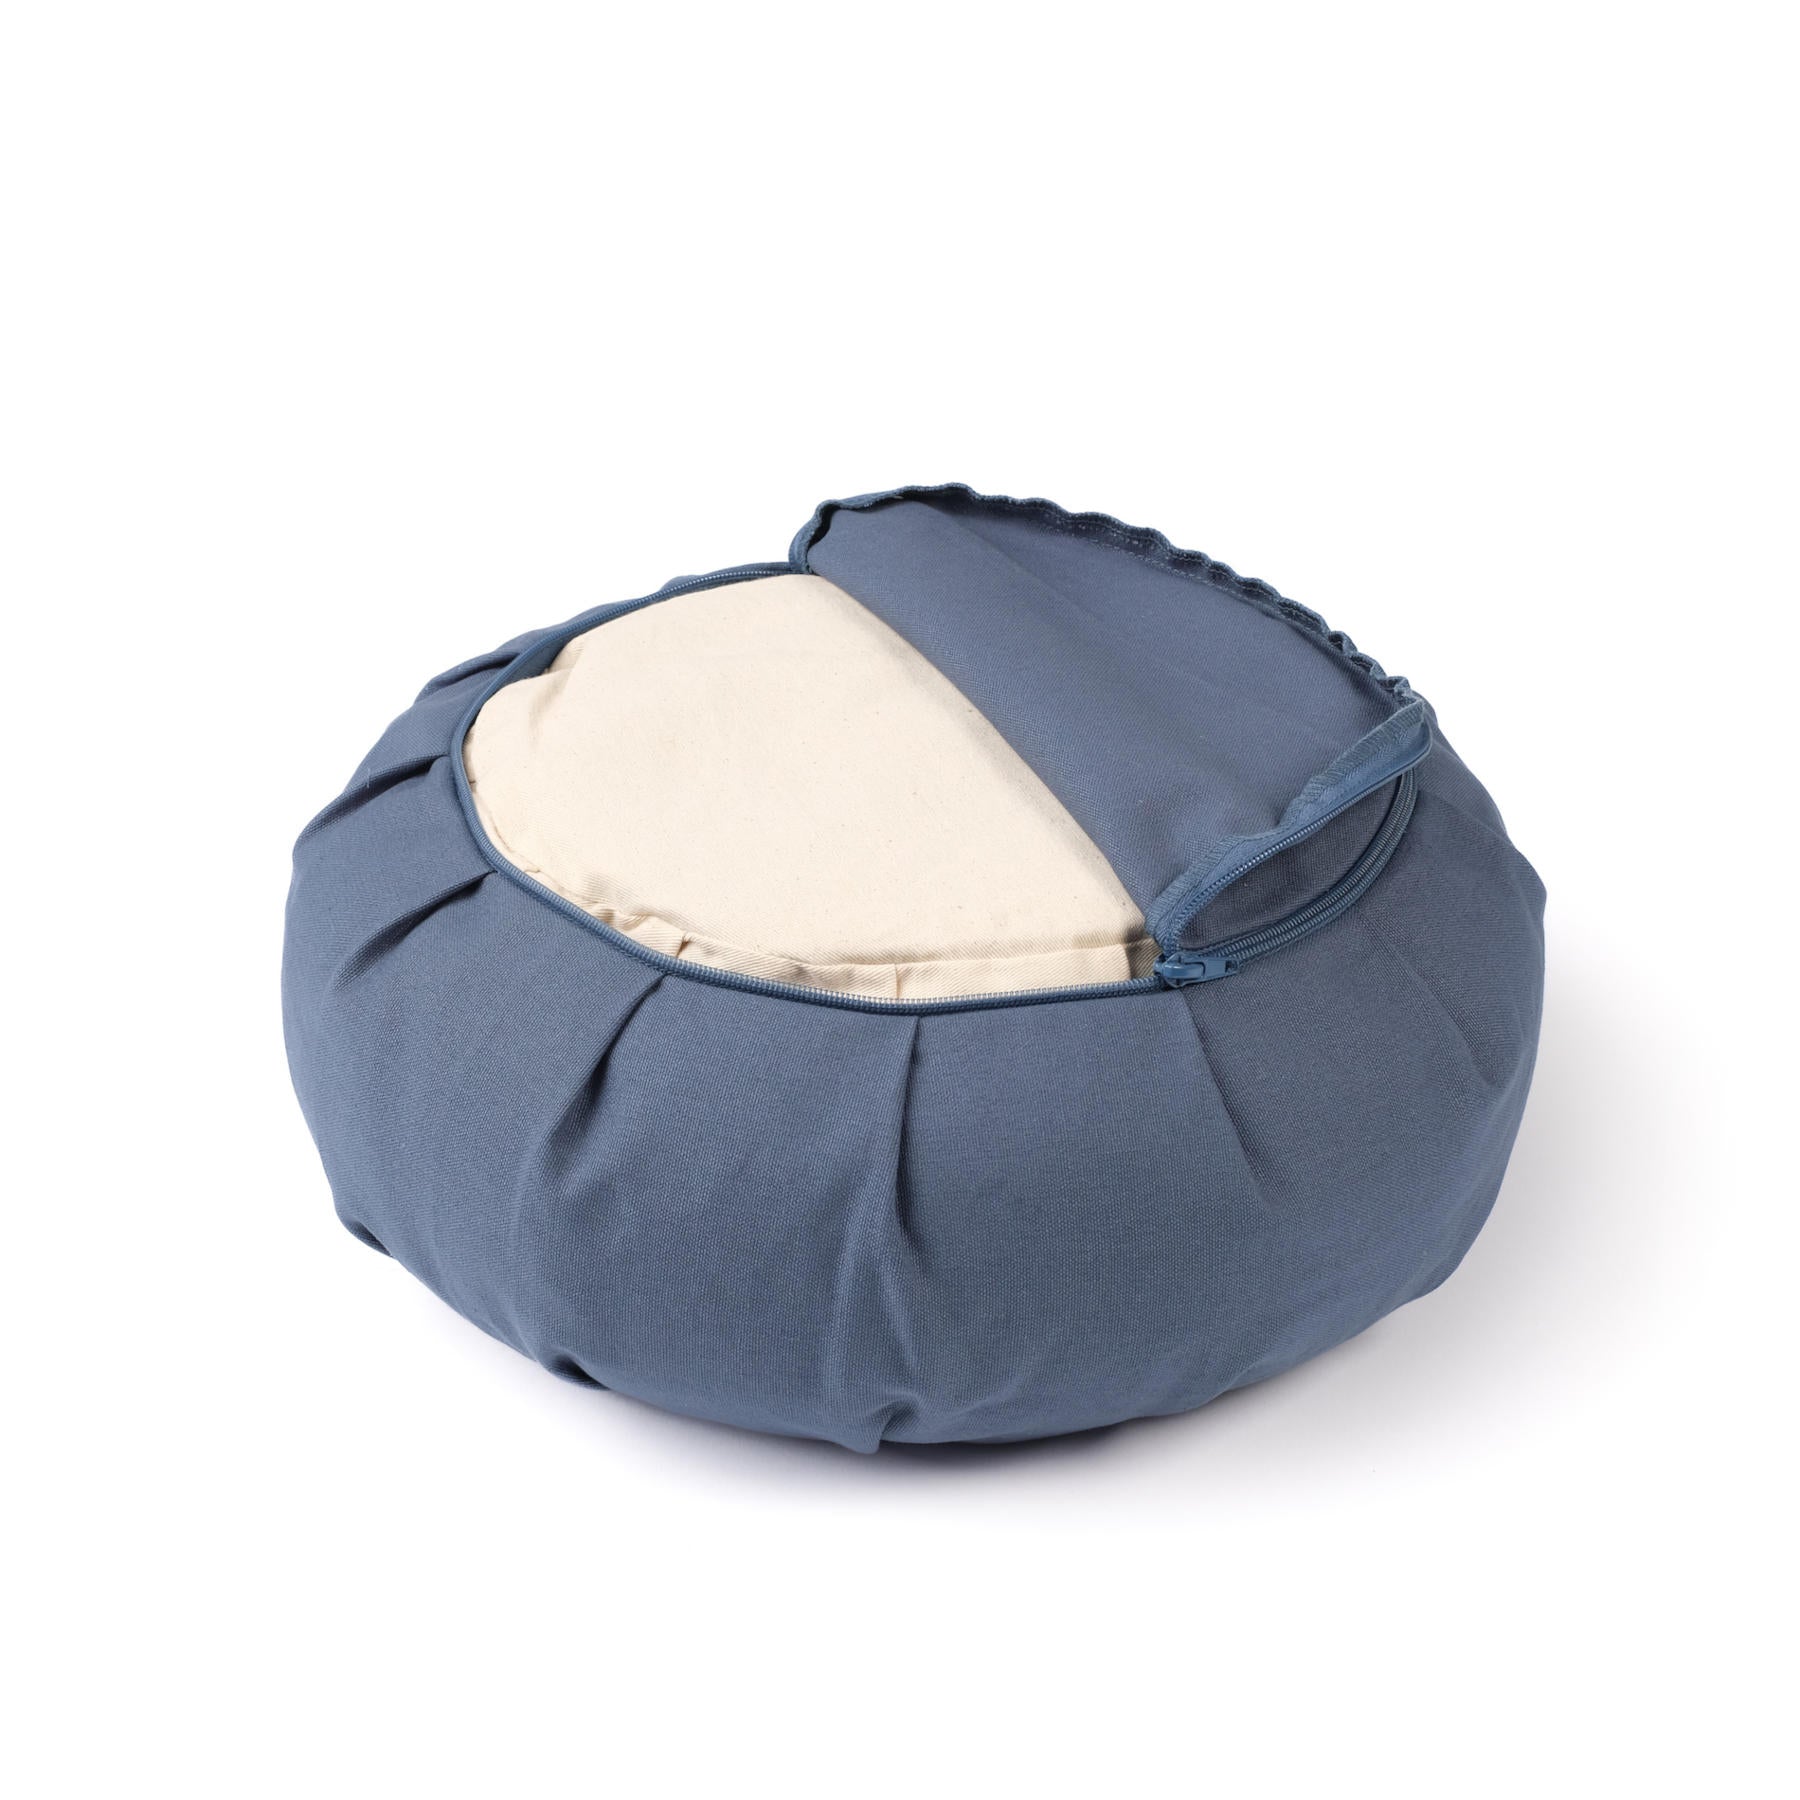 Cuscino da meditazione Zafu uni sand in cotone organico blu-cielo